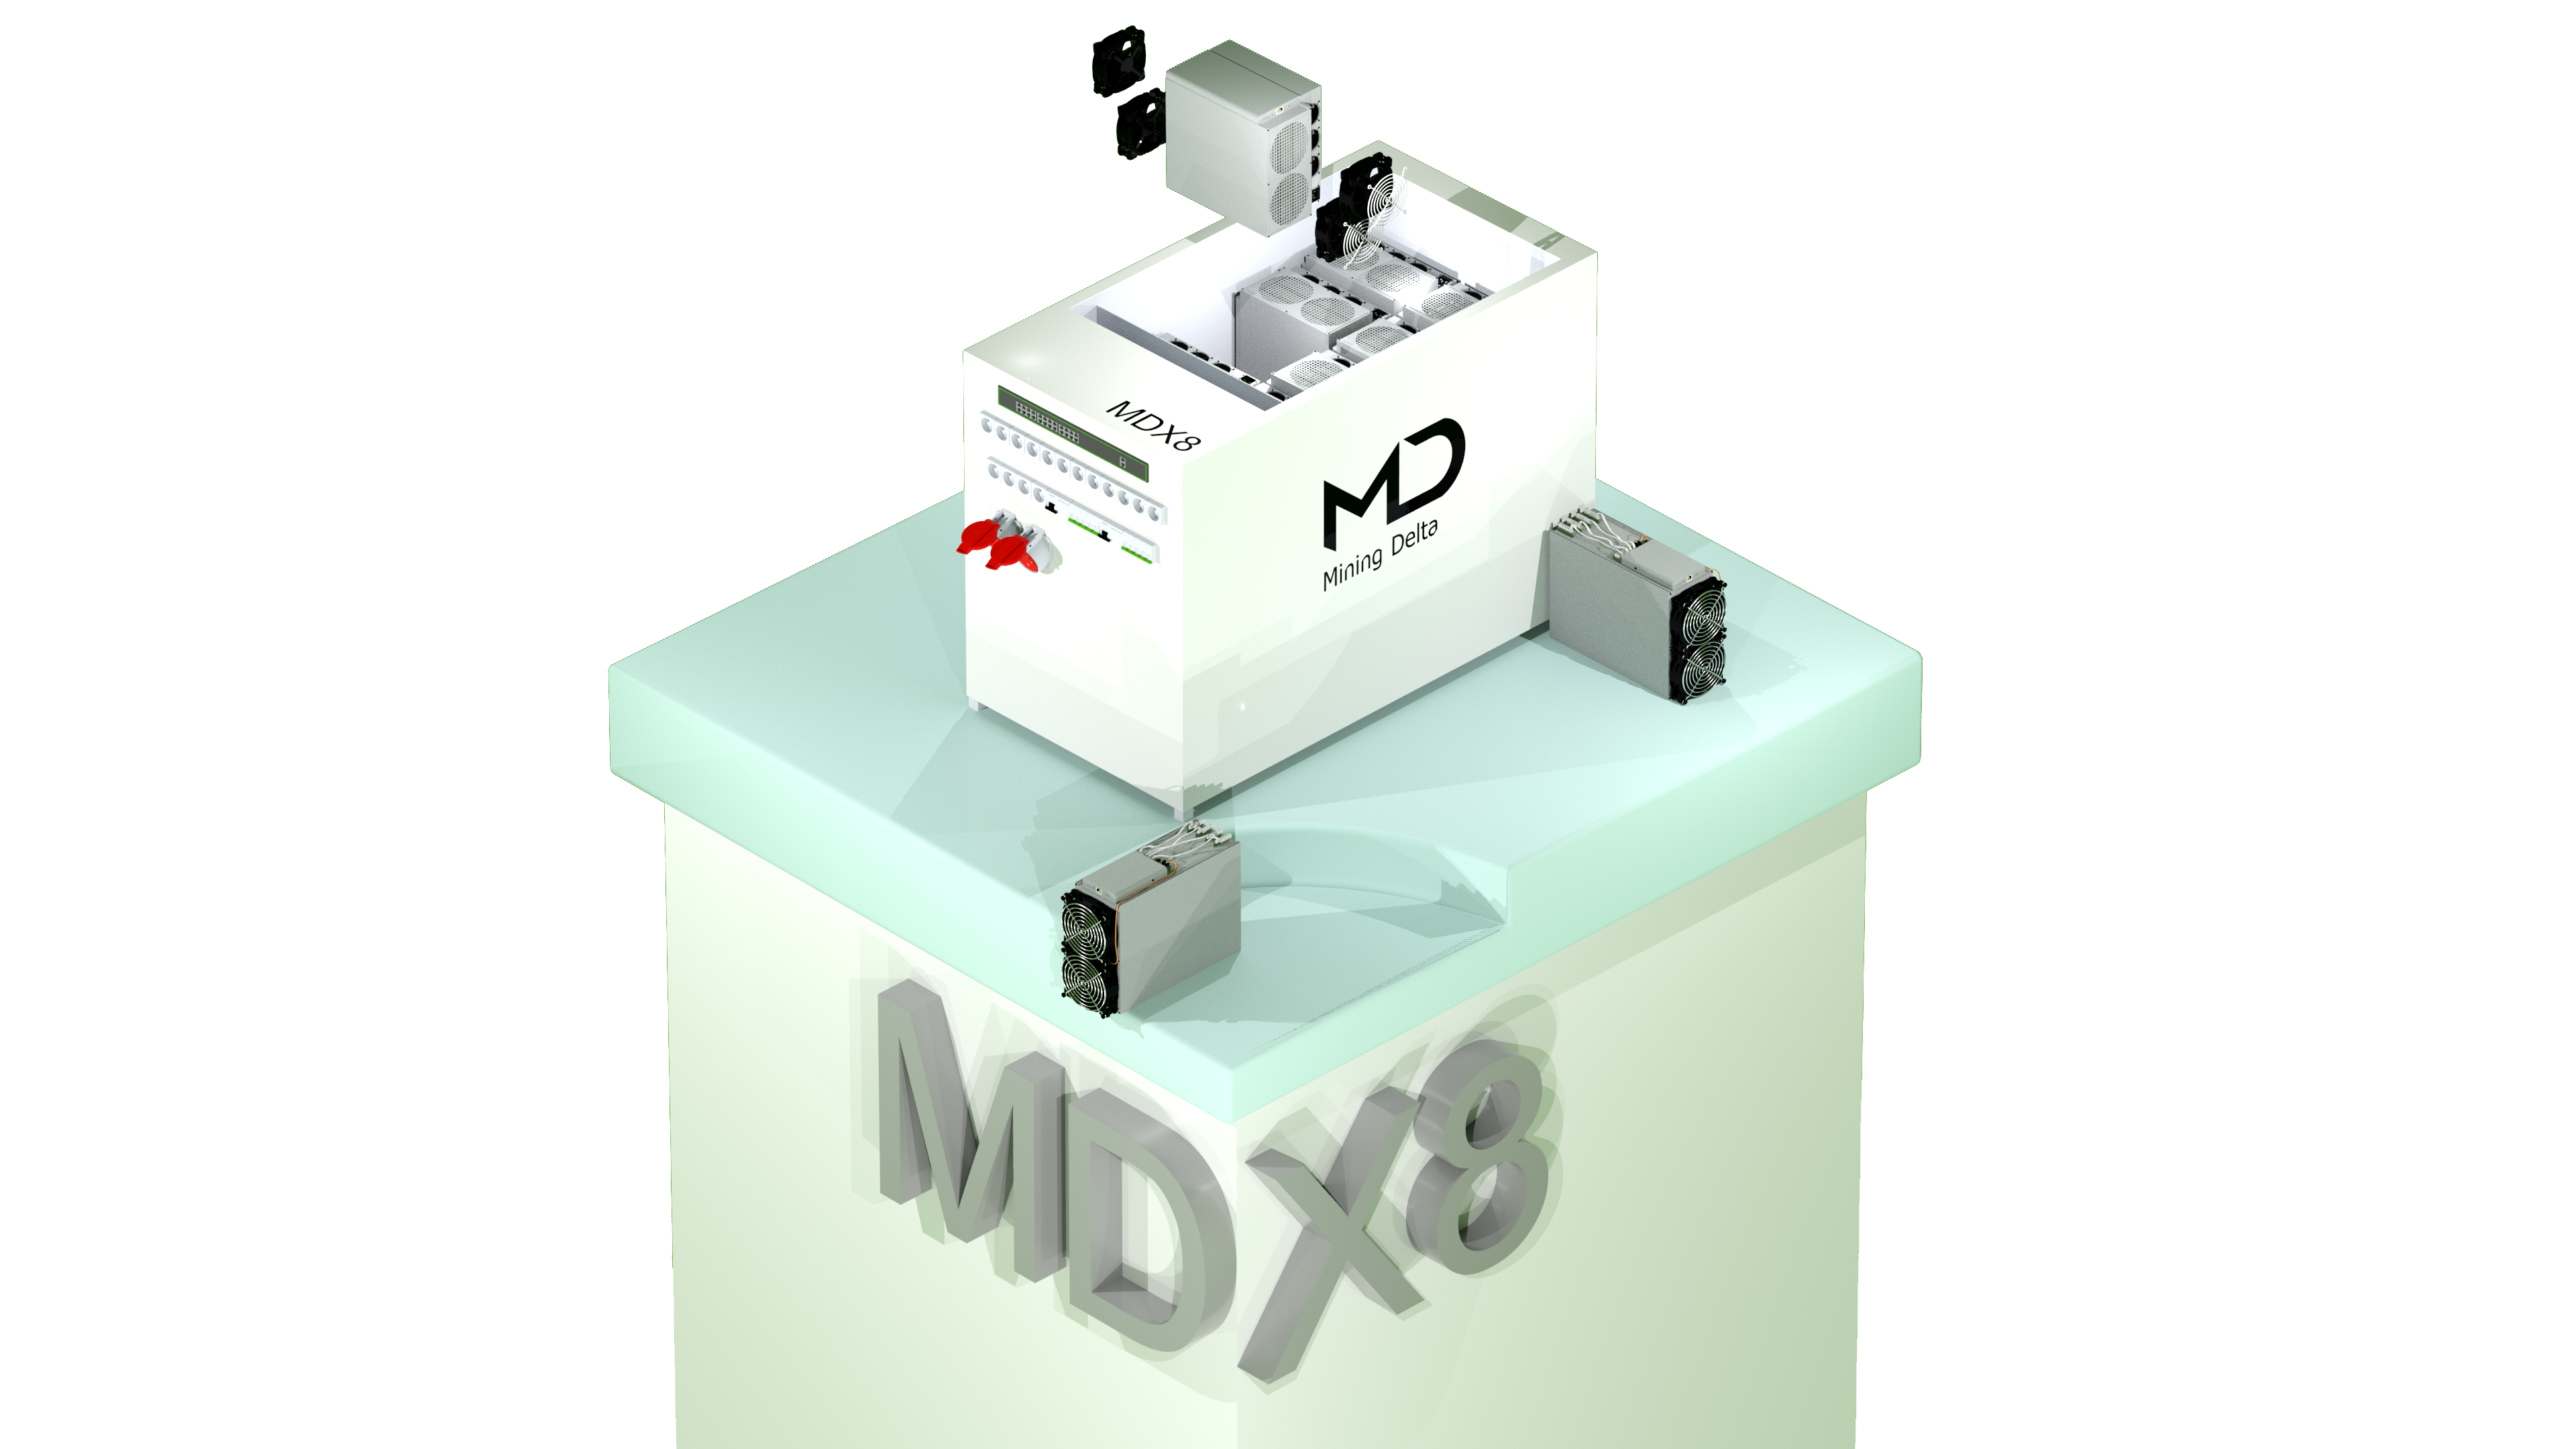 MDX8